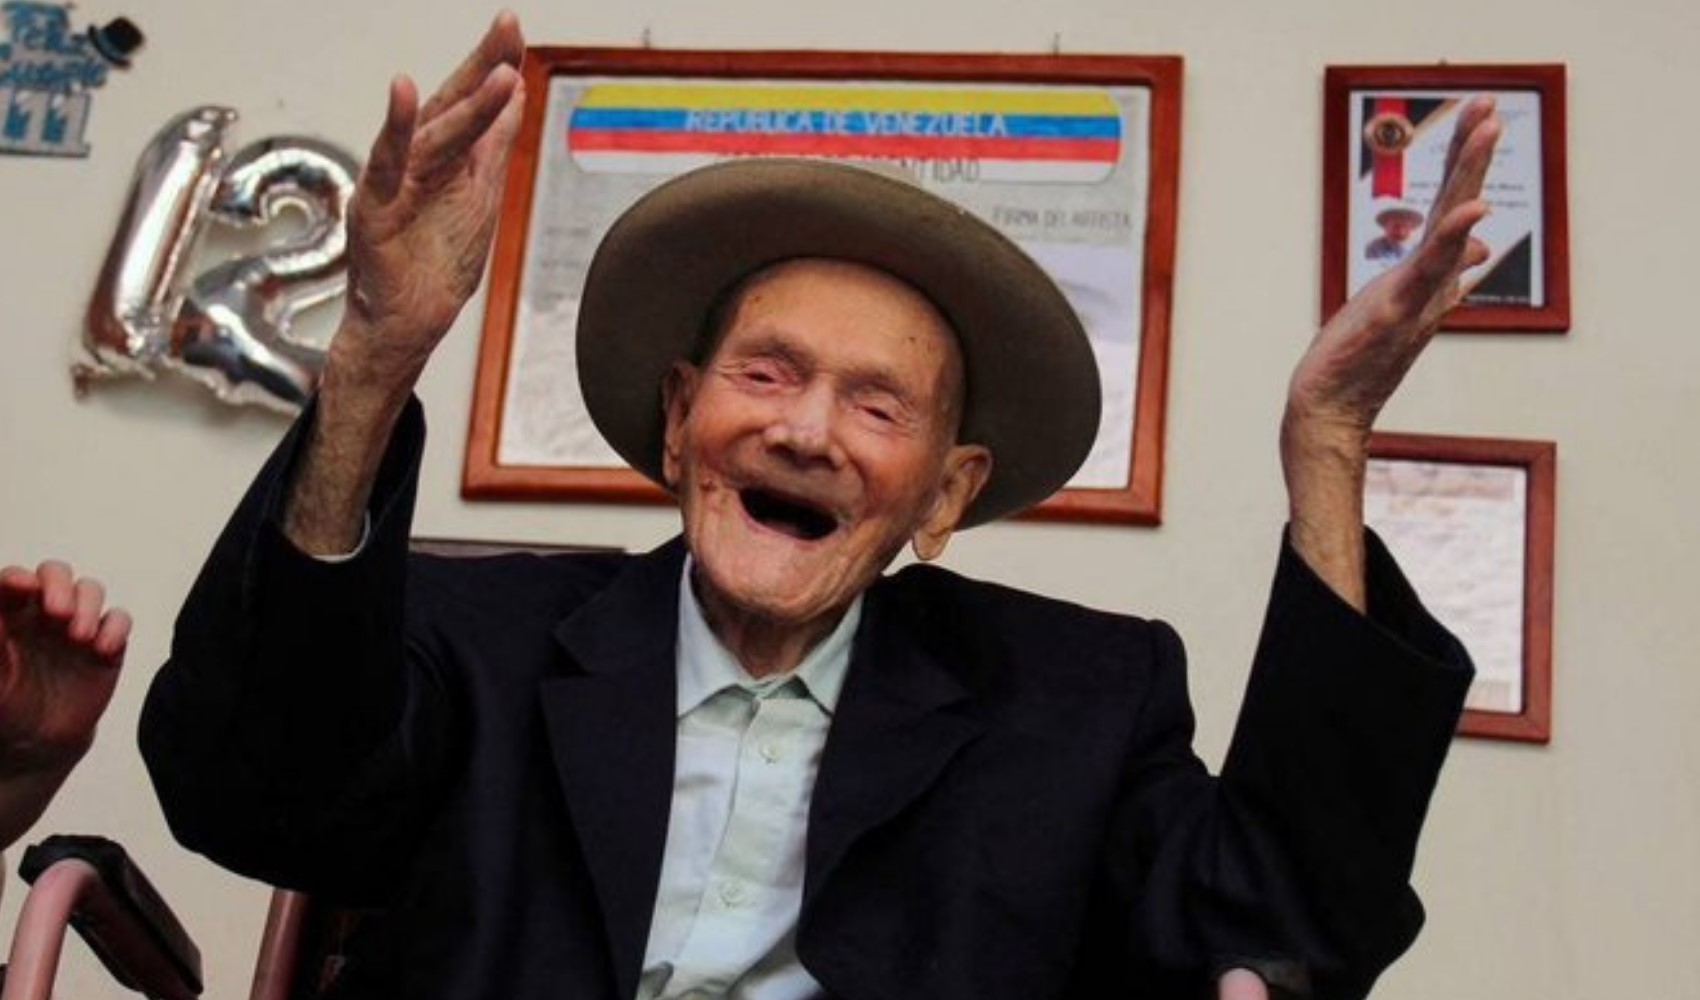 Dünyanın en yaşlı erkeği 114 yaşında öldü